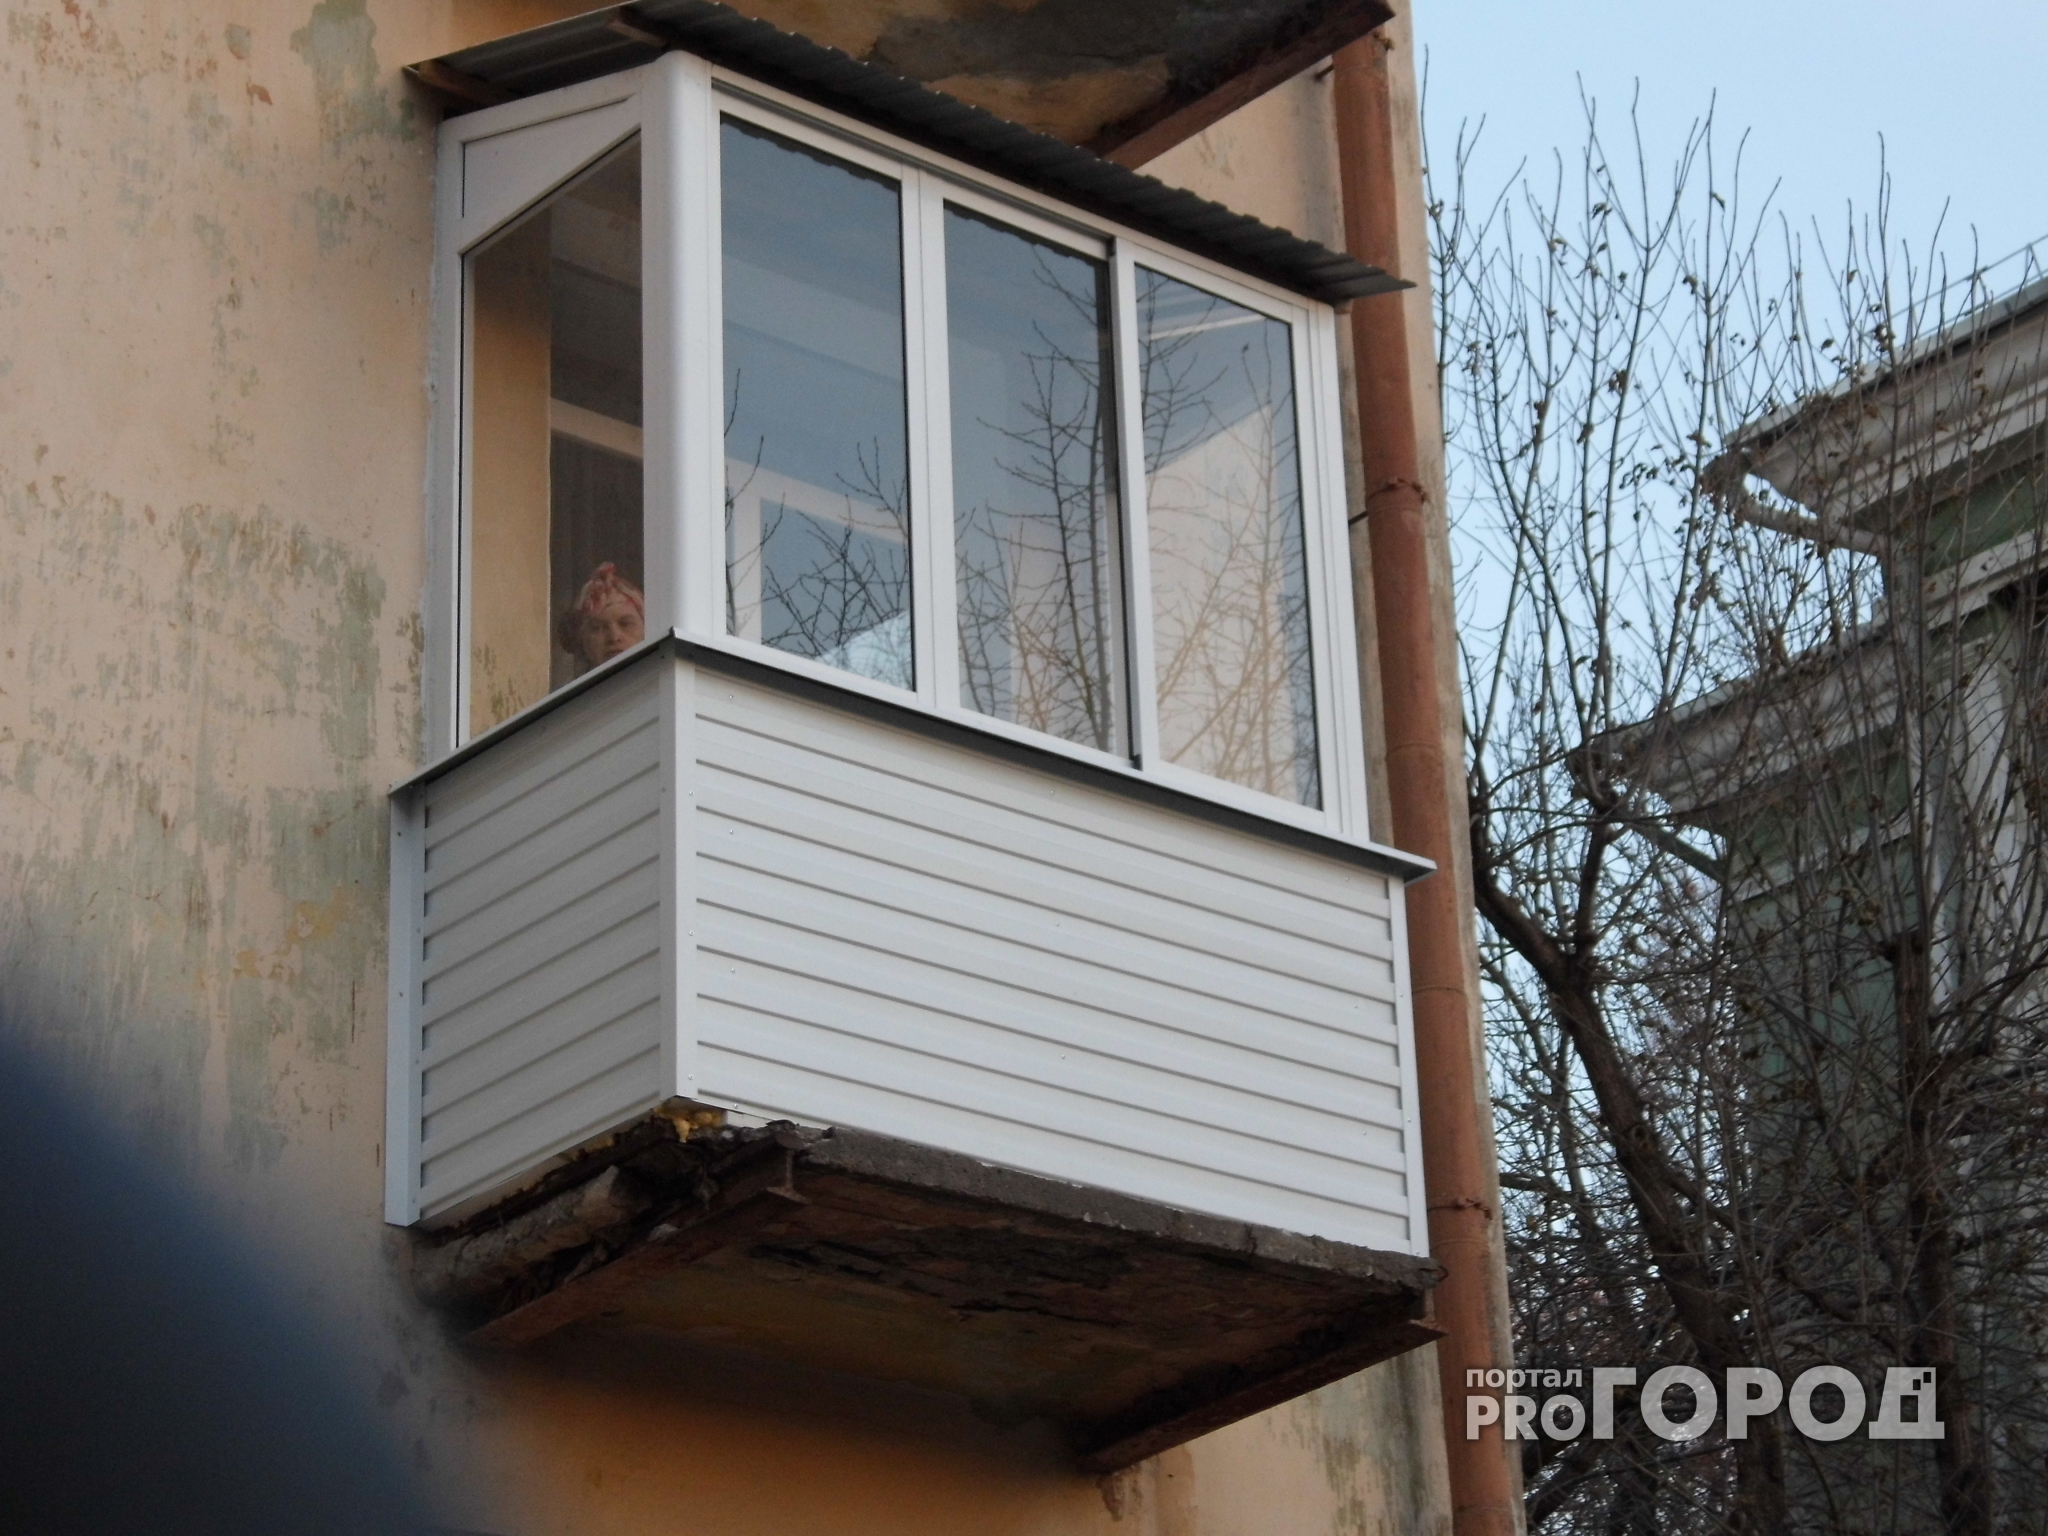 27-летний житель Дзержинска убил свою бабушку и спрятал тело на балконе